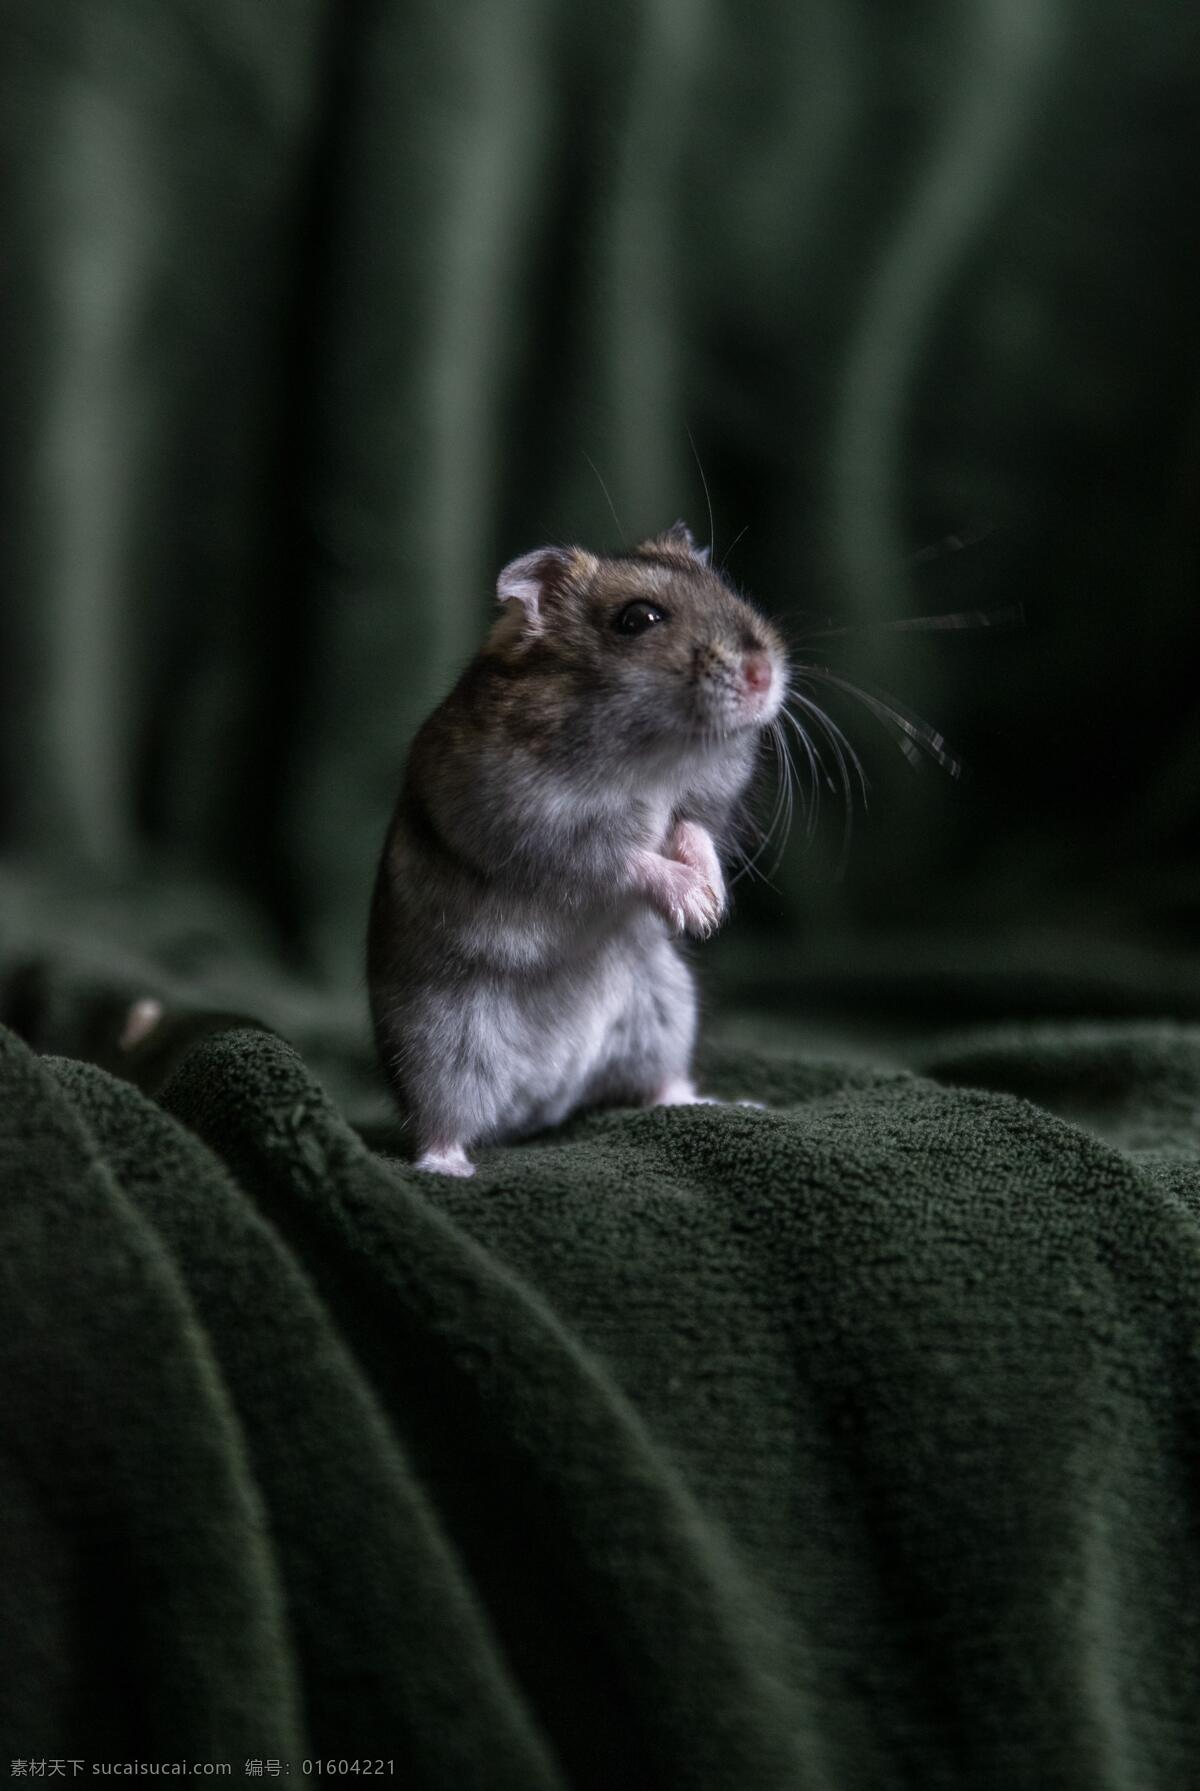 只 仓鼠 小 老鼠 唯唯诺诺 小老鼠 毯子上的老鼠 站立的老鼠 害怕的老鼠 胆小的老鼠 胆小如鼠 鼠辈 感受周围 敏锐 听觉 图库动物生物 生物世界 其他生物